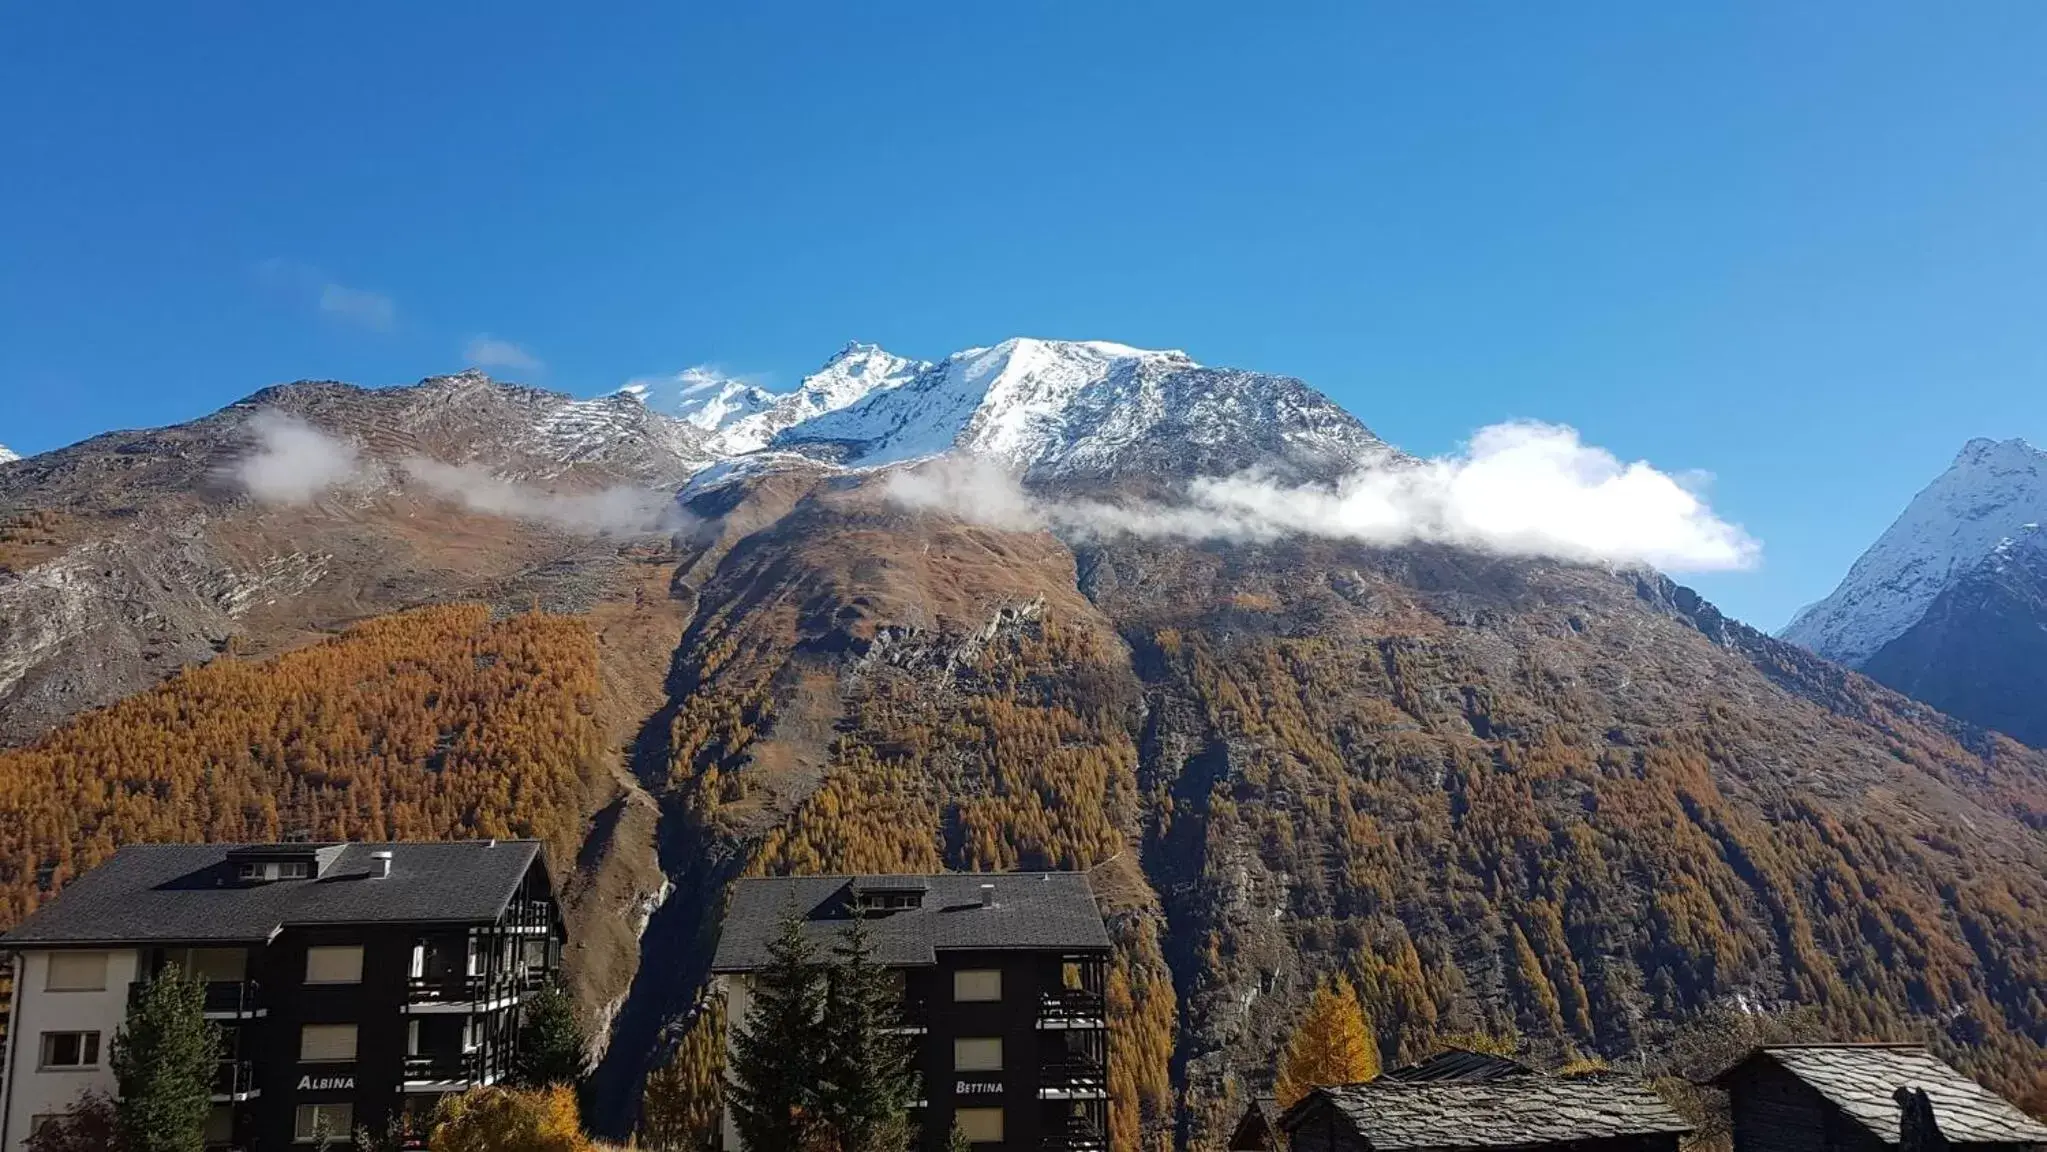 Mountain view, Winter in Hotel Alpenperle